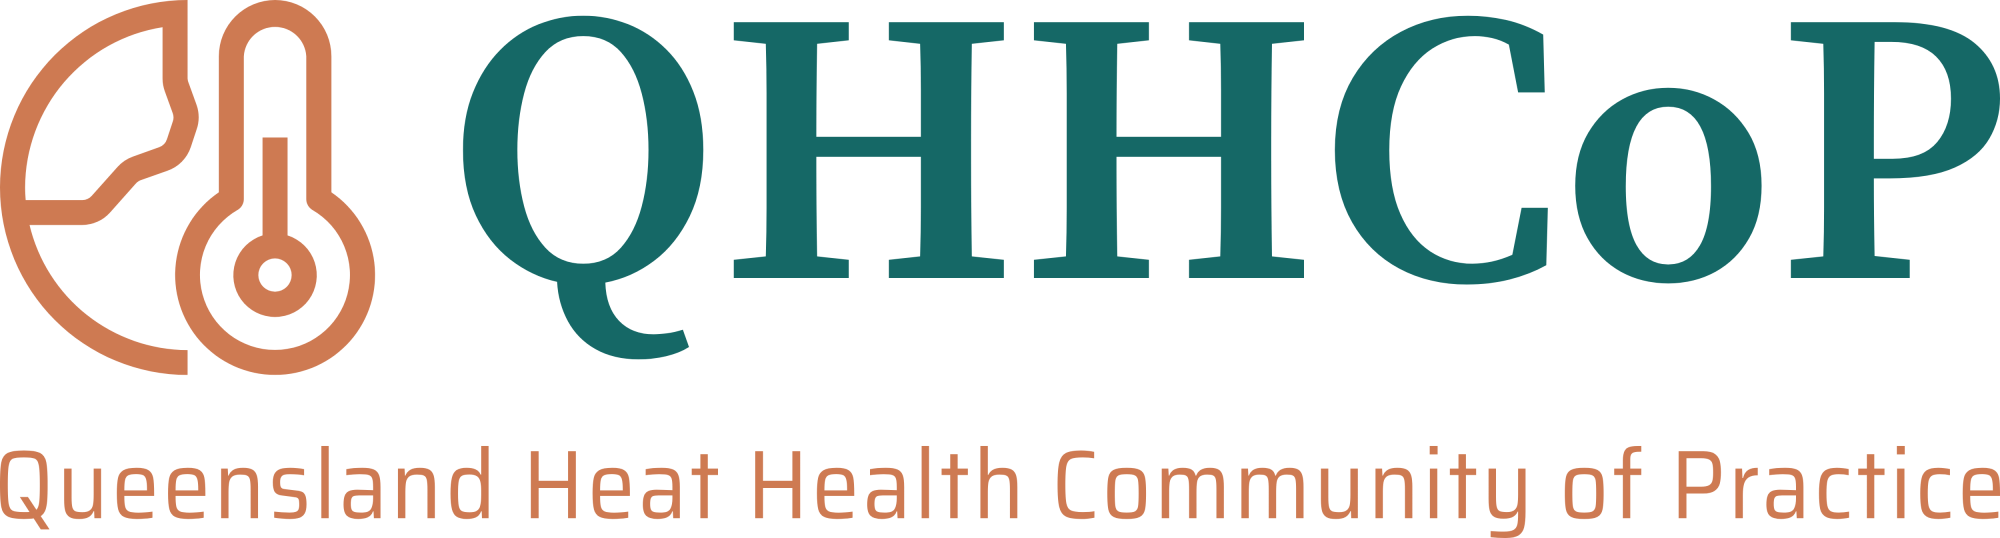 Queensland Heat Health Community of Practice